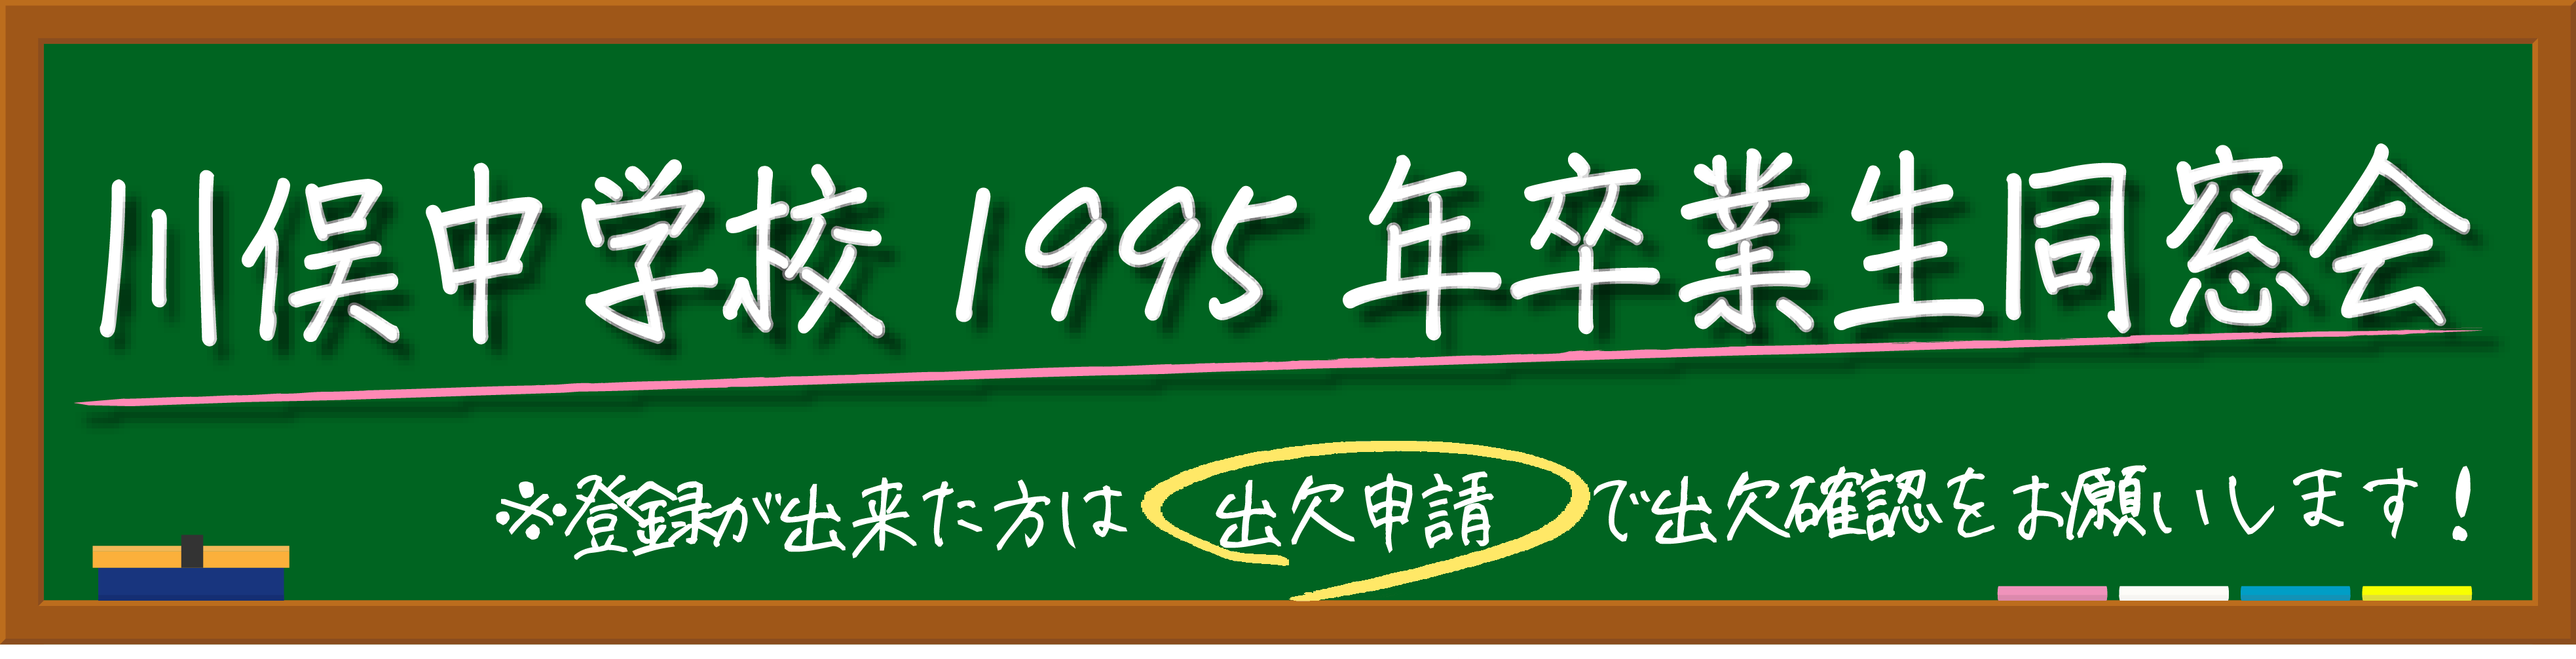 【第二回】川俣町立川俣中学校1995年卒業生同窓会